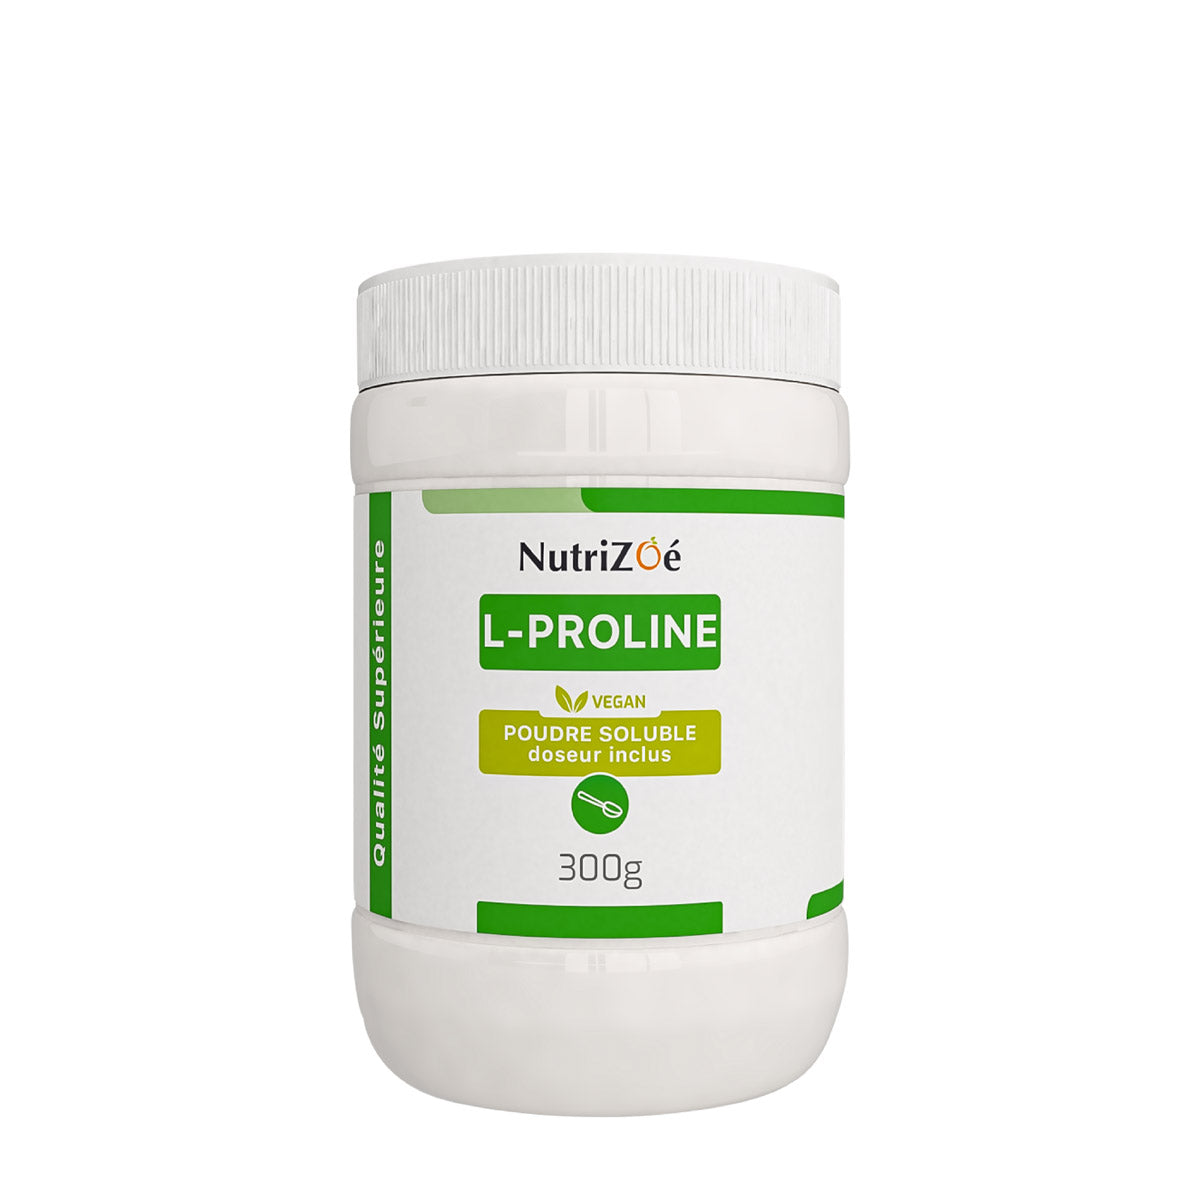 L-Proline d'origine végétale | poudre soluble | Format 300g | acide aminé | Nutrizoé